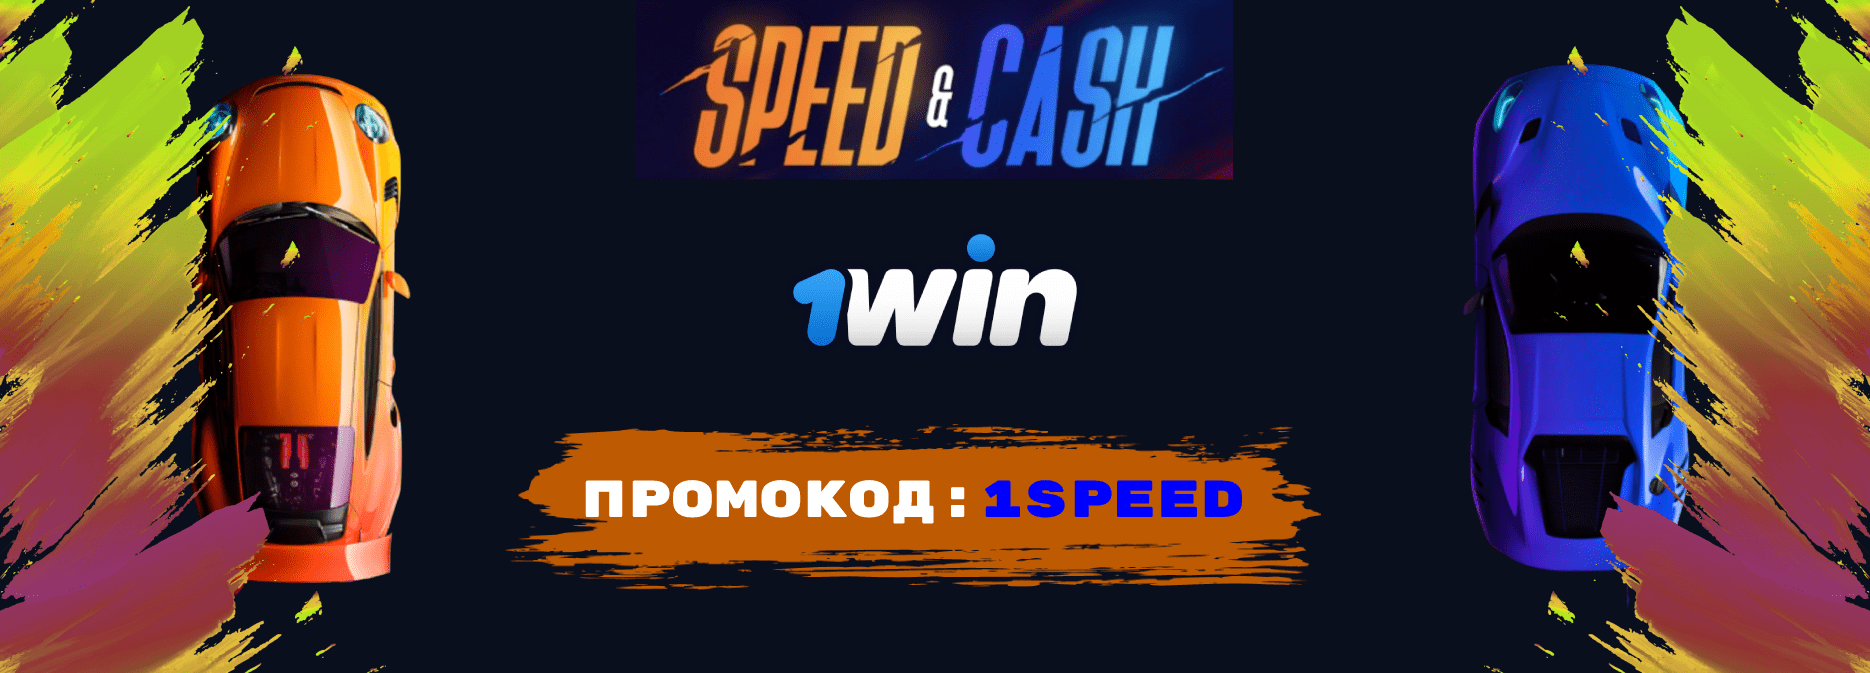 Speed n cash 1win стратегия